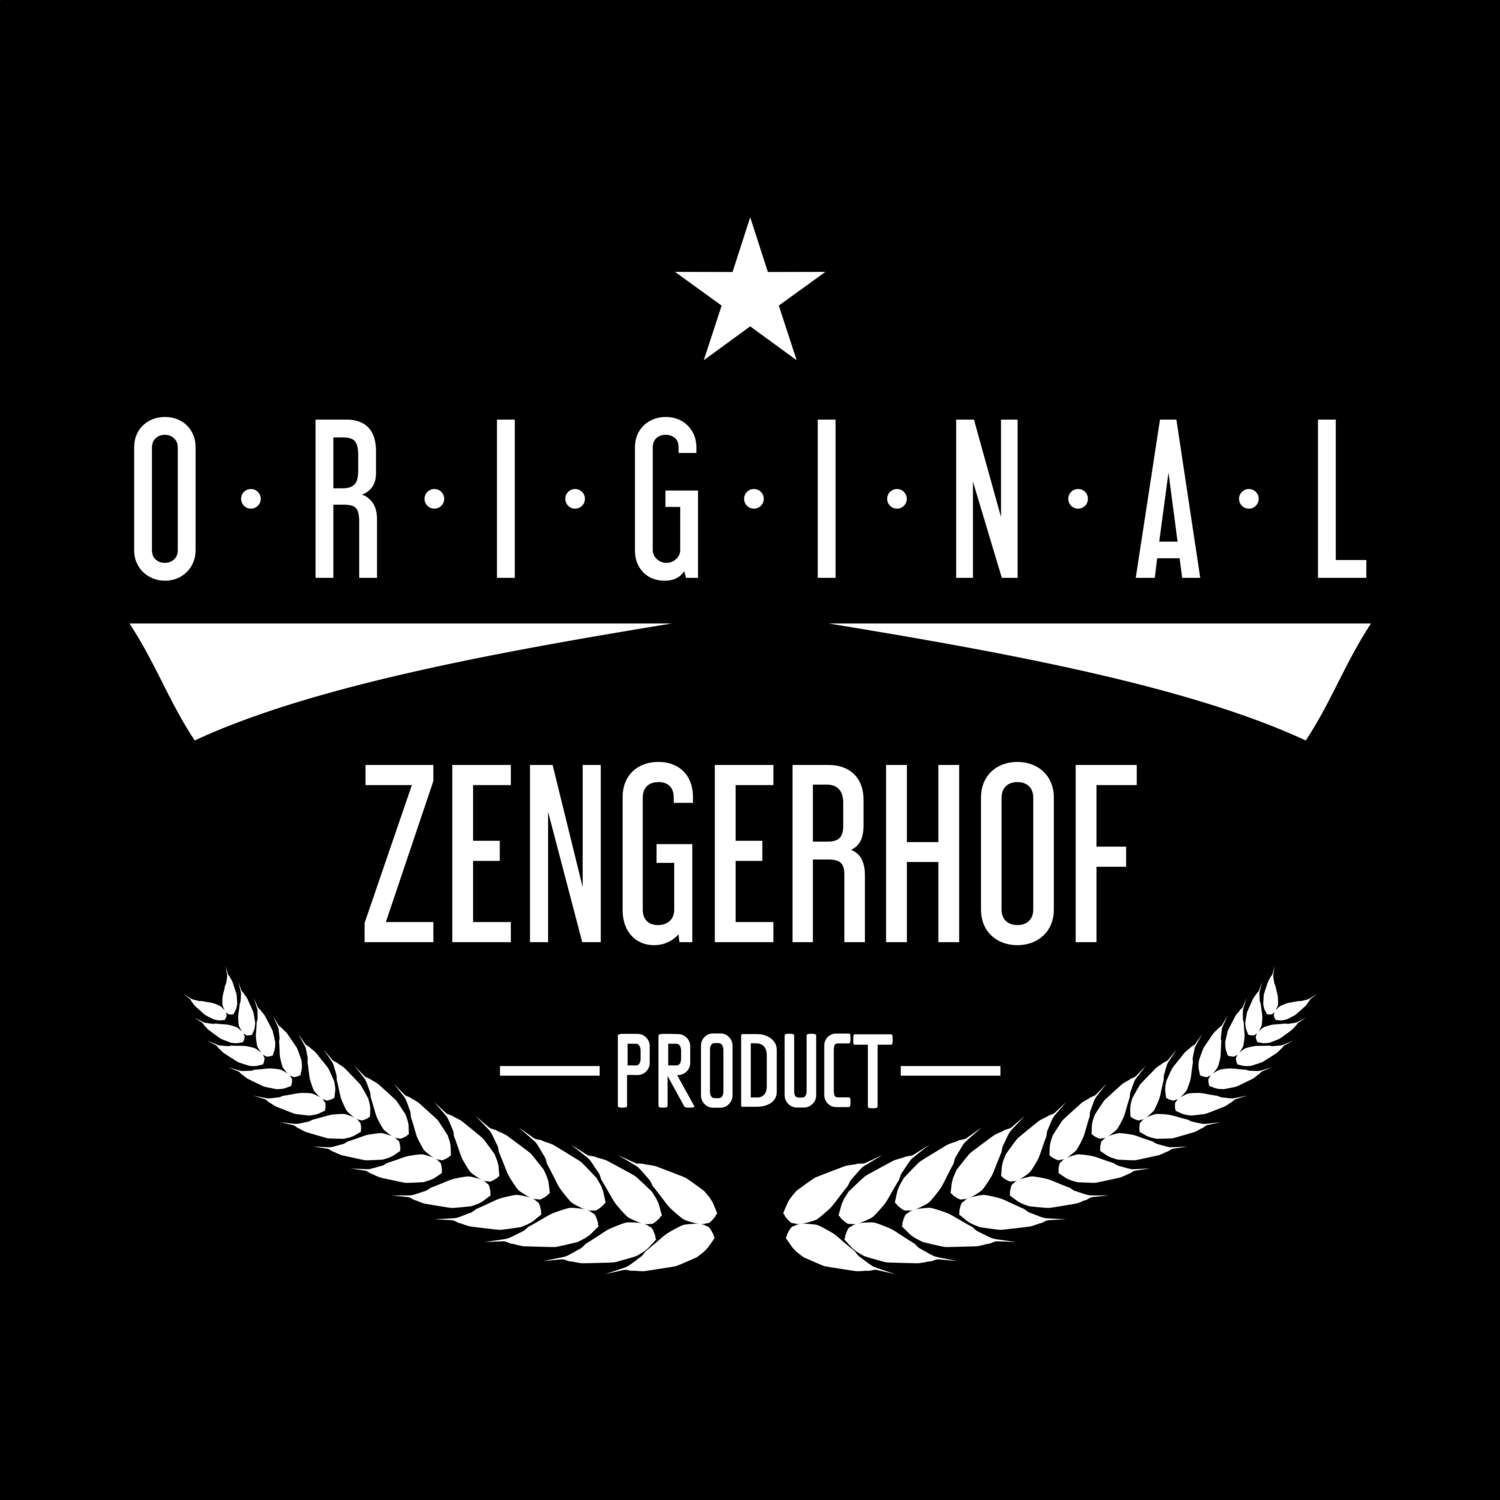 Zengerhof T-Shirt »Original Product«